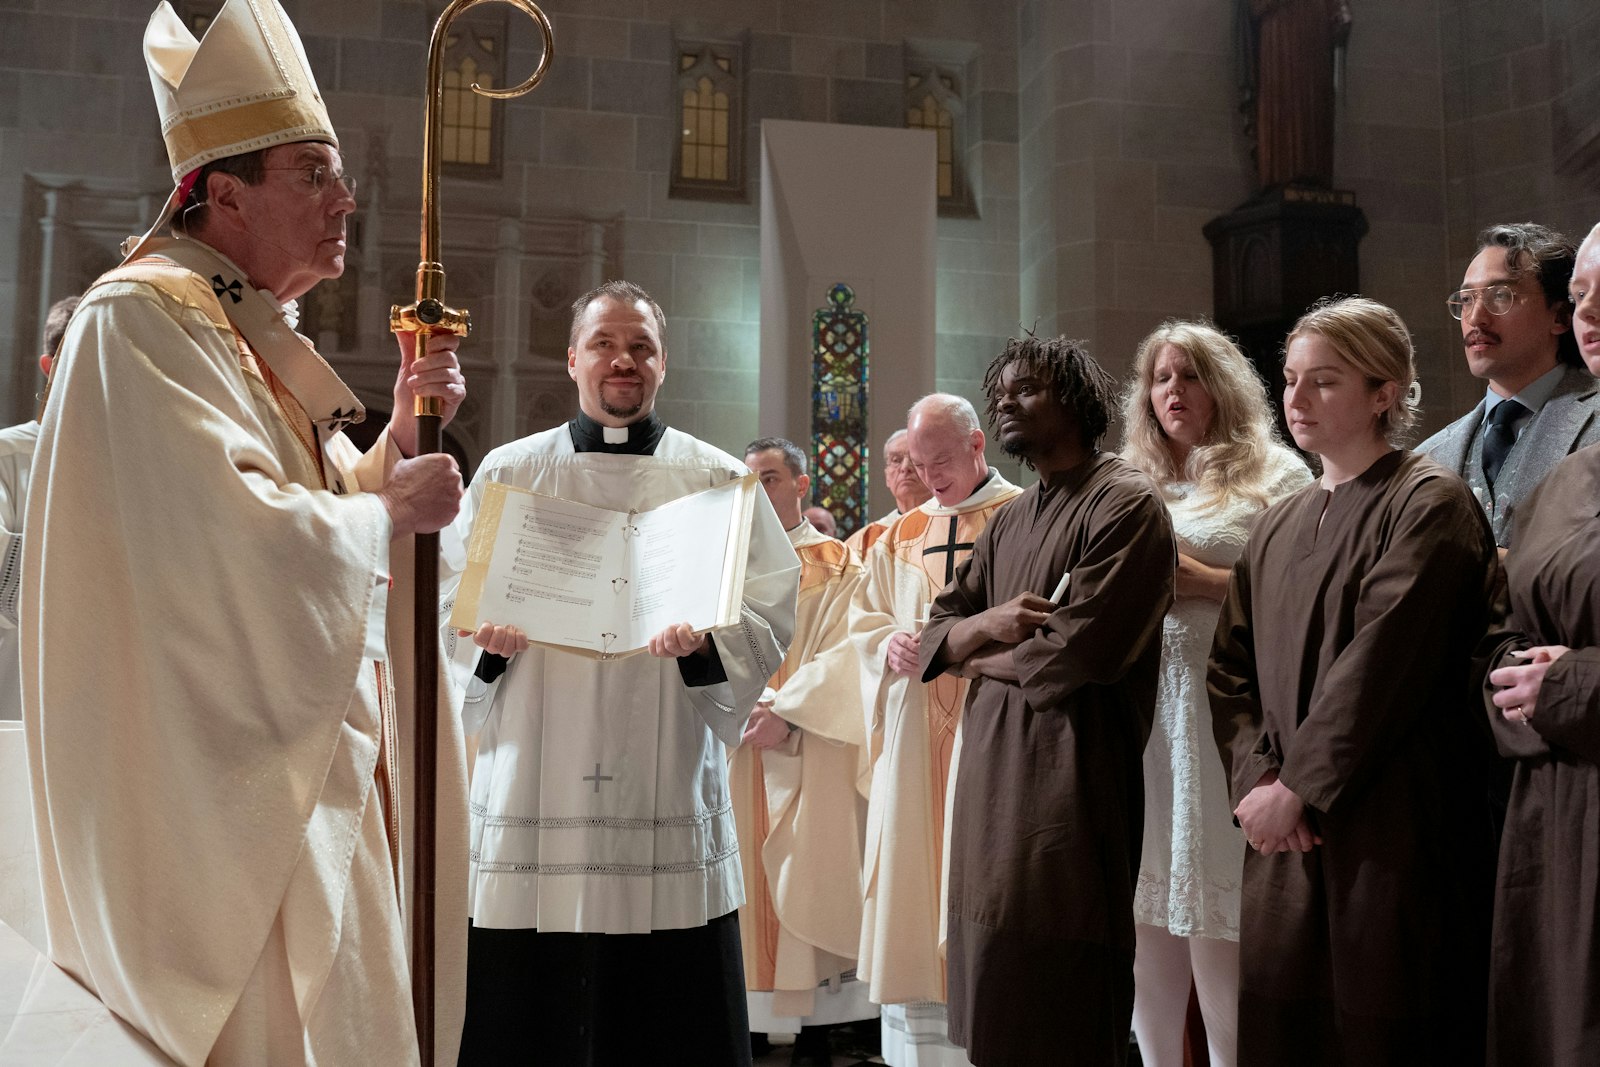 El arzobispo Vigneron pregunta a seis catecúmenos que se están preparando para ser bautizados durante la Vigilia Pascual acerca de su intención de unirse a la Iglesia Católica